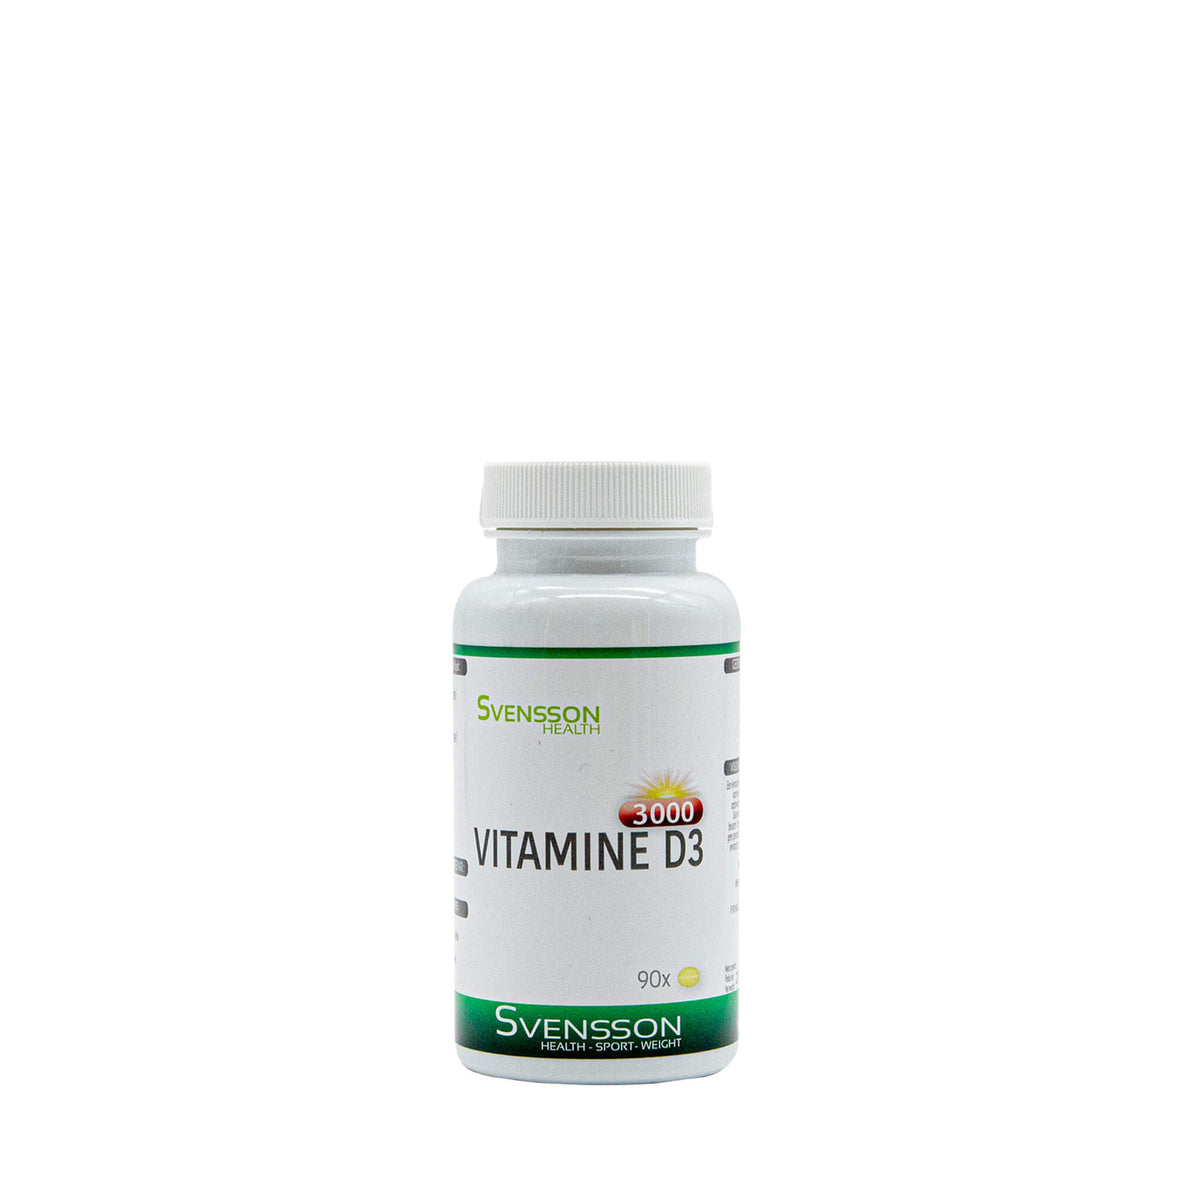 vitamin d3 shop,vitamin d3 capsules,vitamin d3 supplement